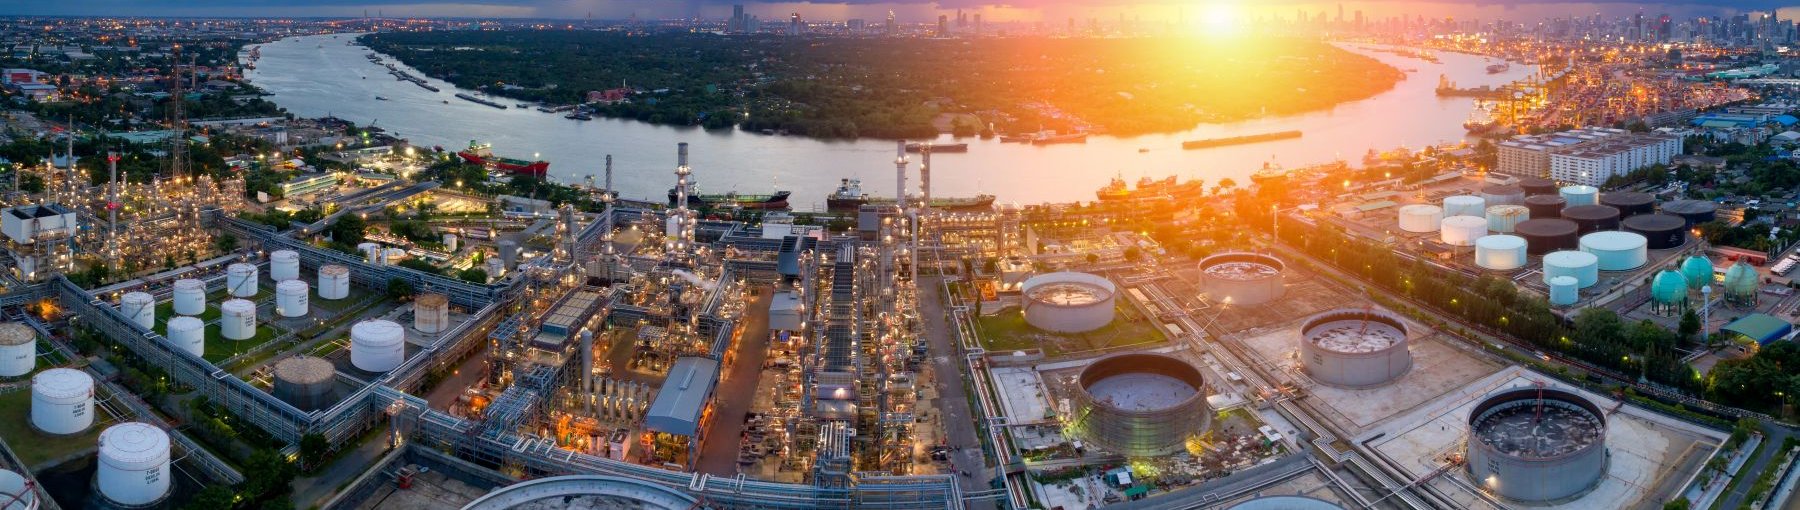 Ropa naftowa: 50 największych producentów 2019. Fot. kittikorn14/Adobe Stock